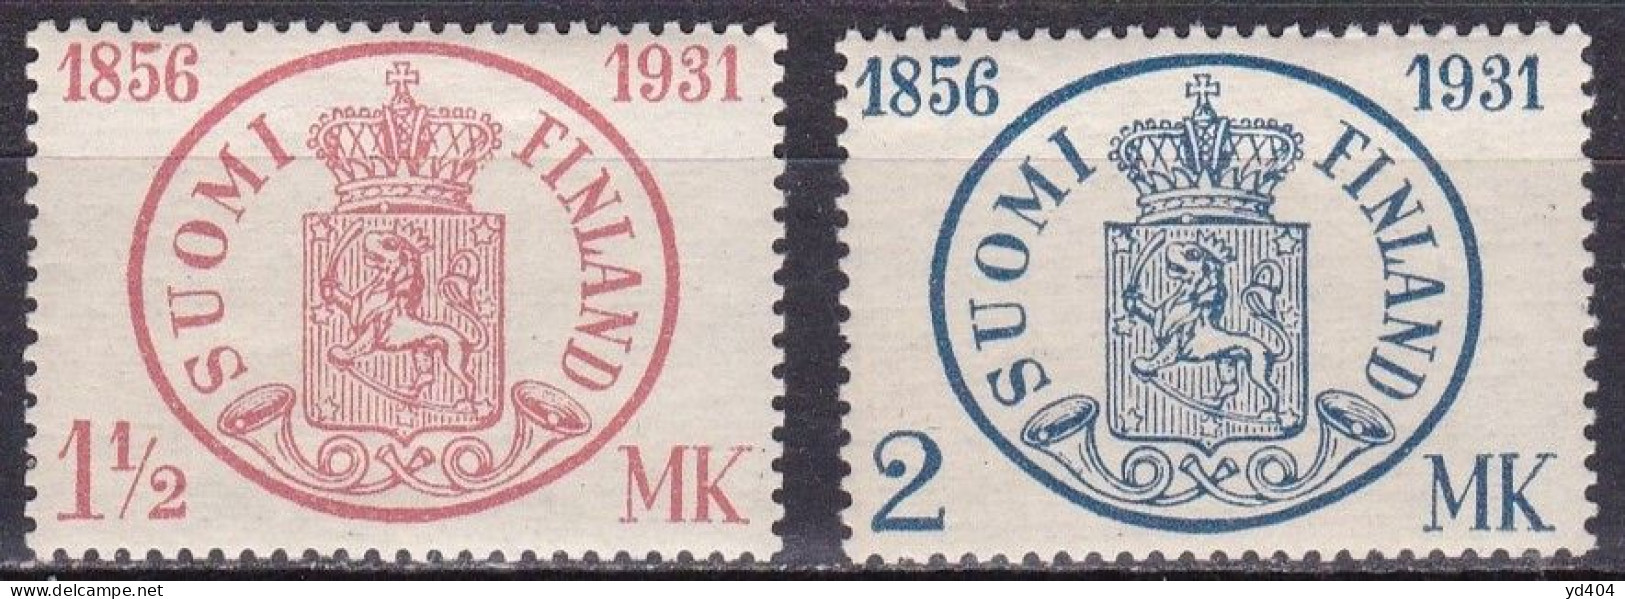 FI205 – FINLANDE – FINLAND – 1931 – ANNIV. OF FIRST STAMP – Y&T # 164/5 MNH 12,80 € - Ungebraucht